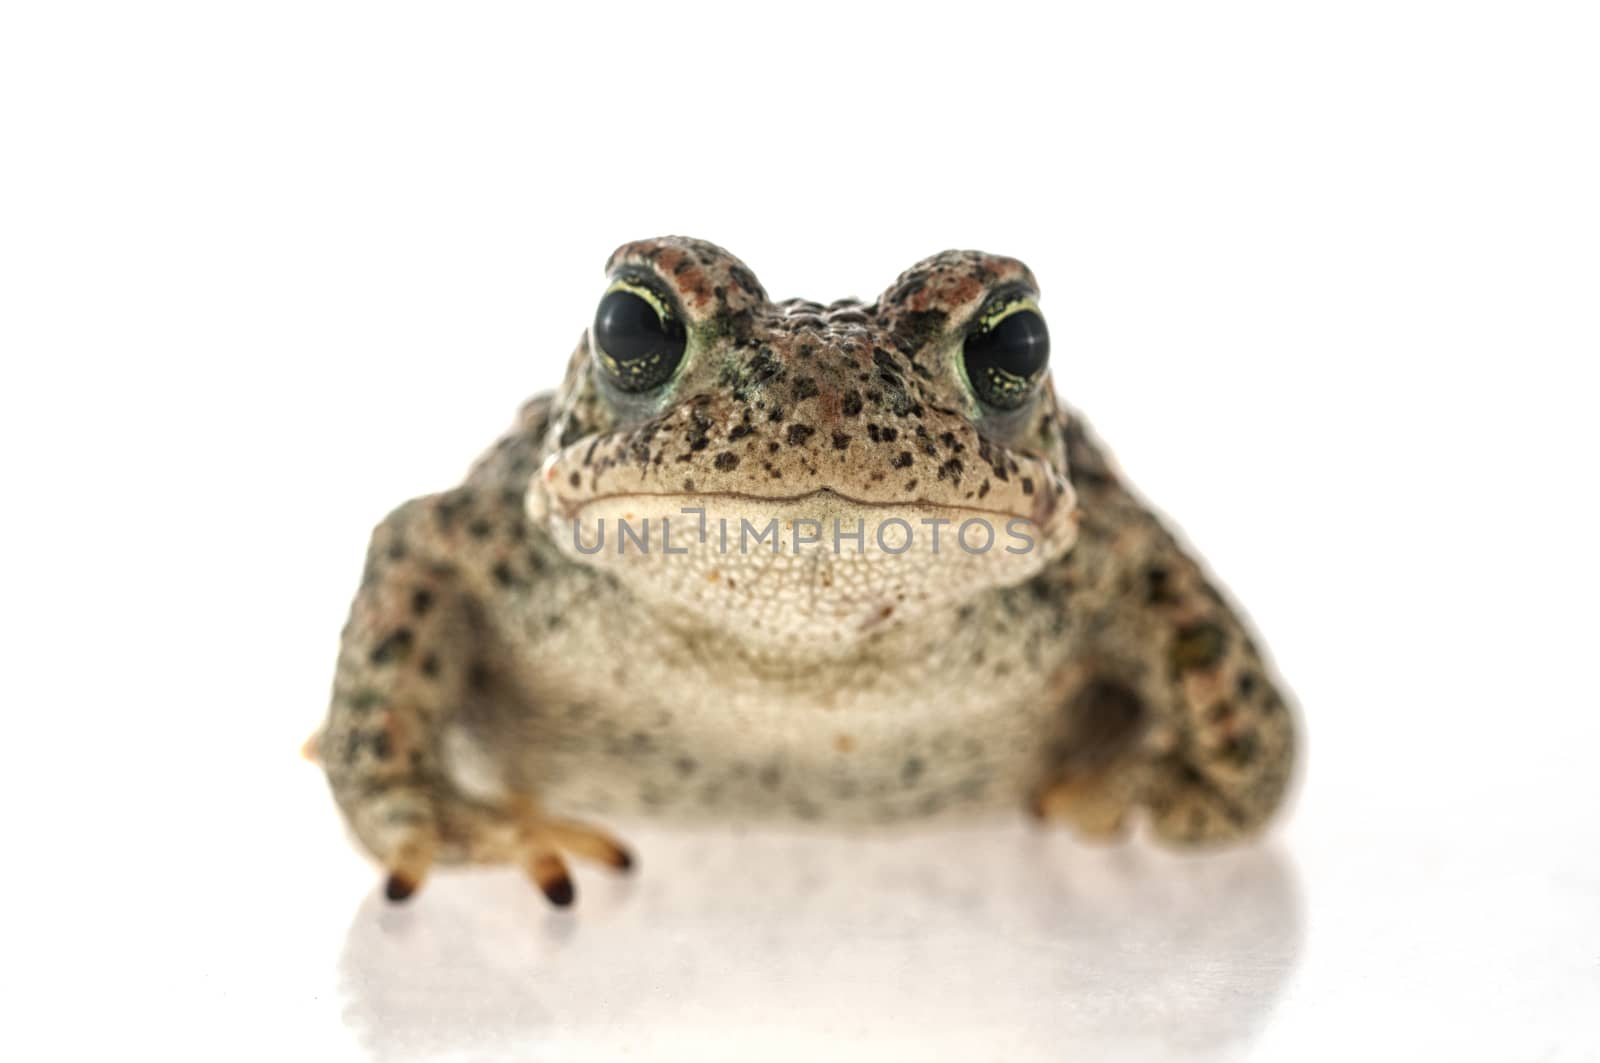 Natterjack toad (Epidalea calamita) with White background by jalonsohu@gmail.com